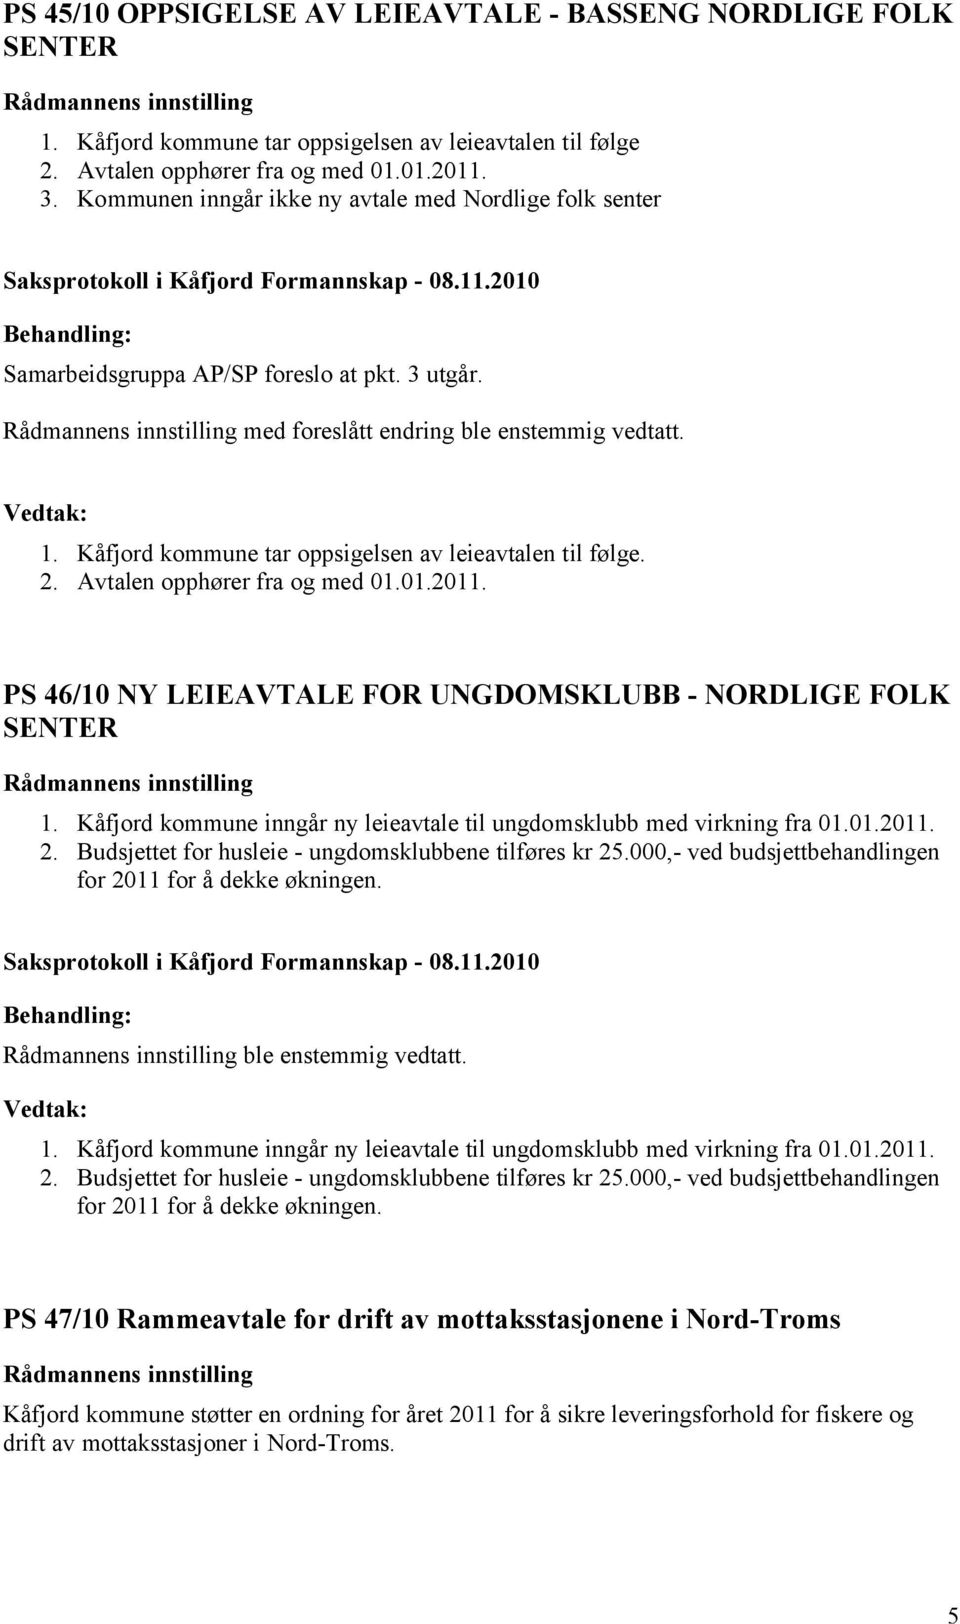 Kåfjord kommune tar oppsigelsen av leieavtalen til følge. 2. Avtalen opphører fra og med 01.01.2011. PS 46/10 NY LEIEAVTALE FOR UNGDOMSKLUBB - NORDLIGE FOLK SENTER 1.